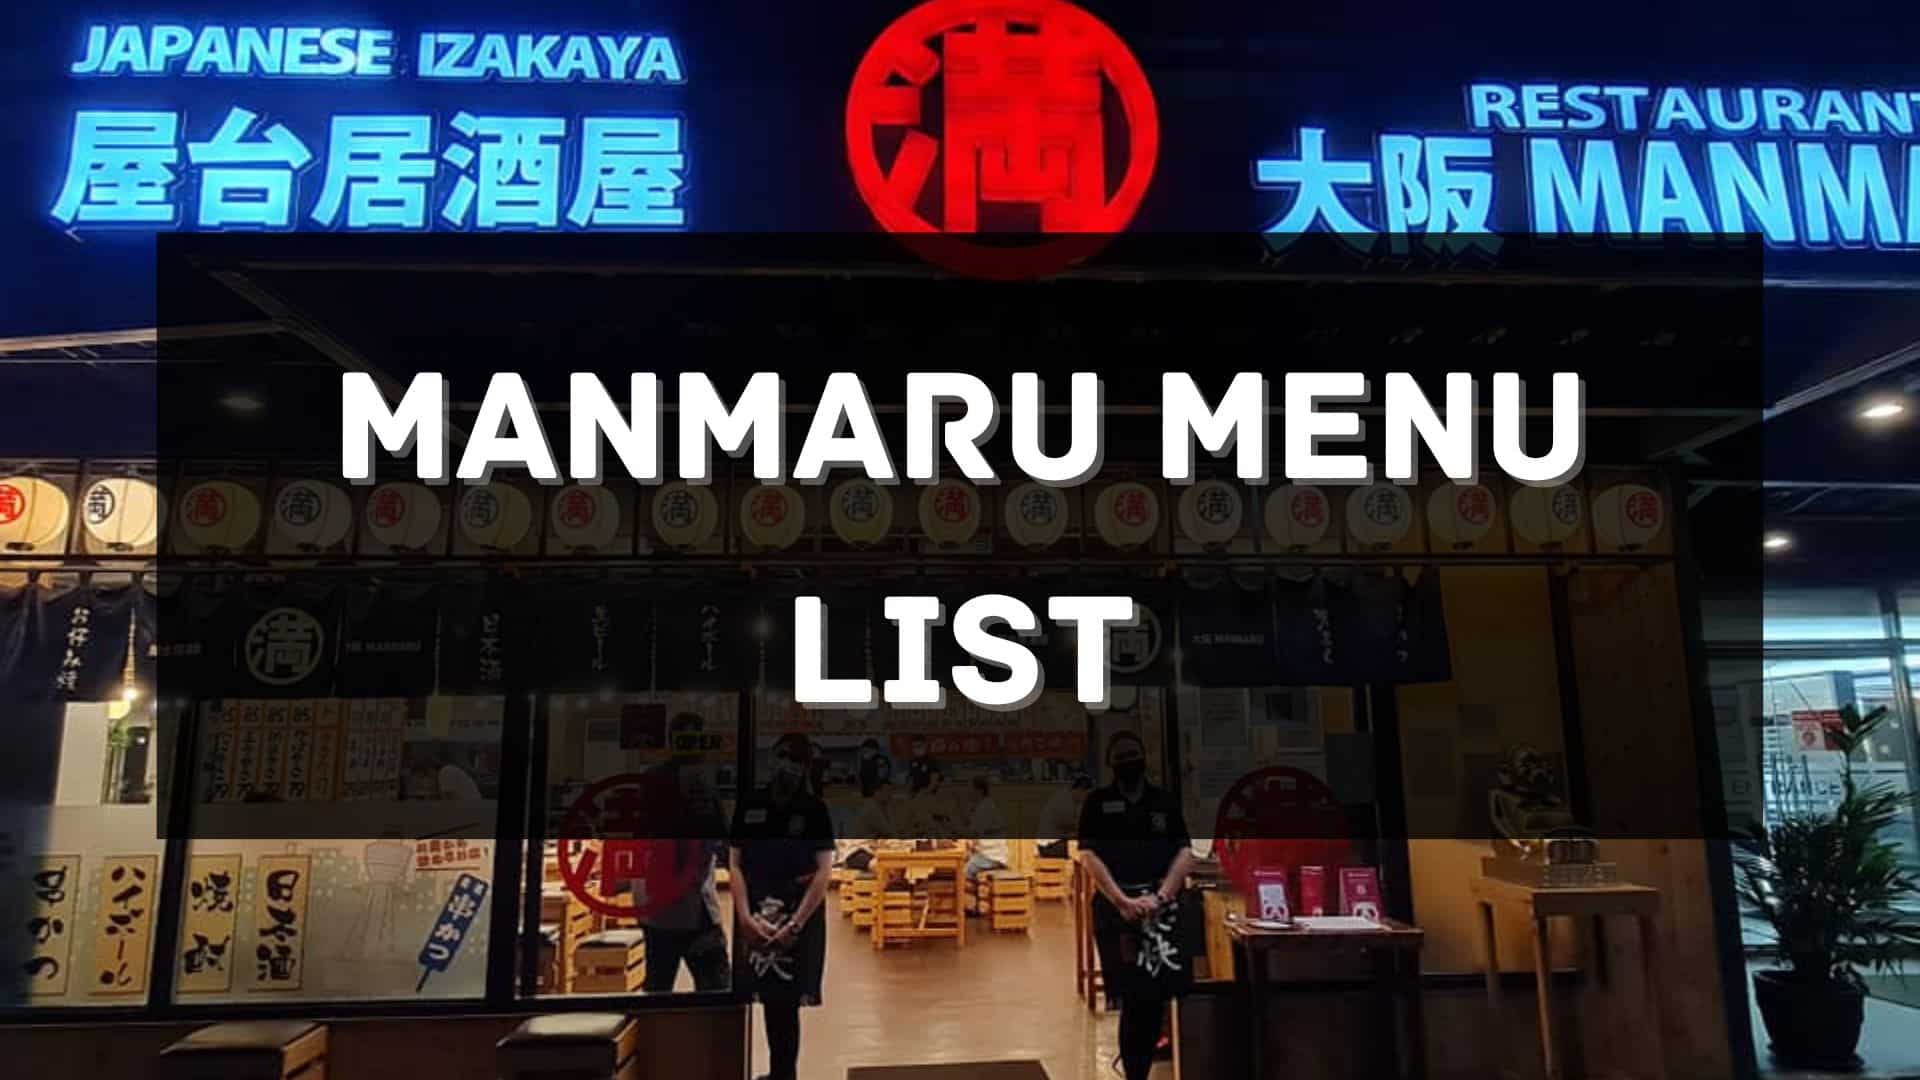 manmaru menu prices philippines